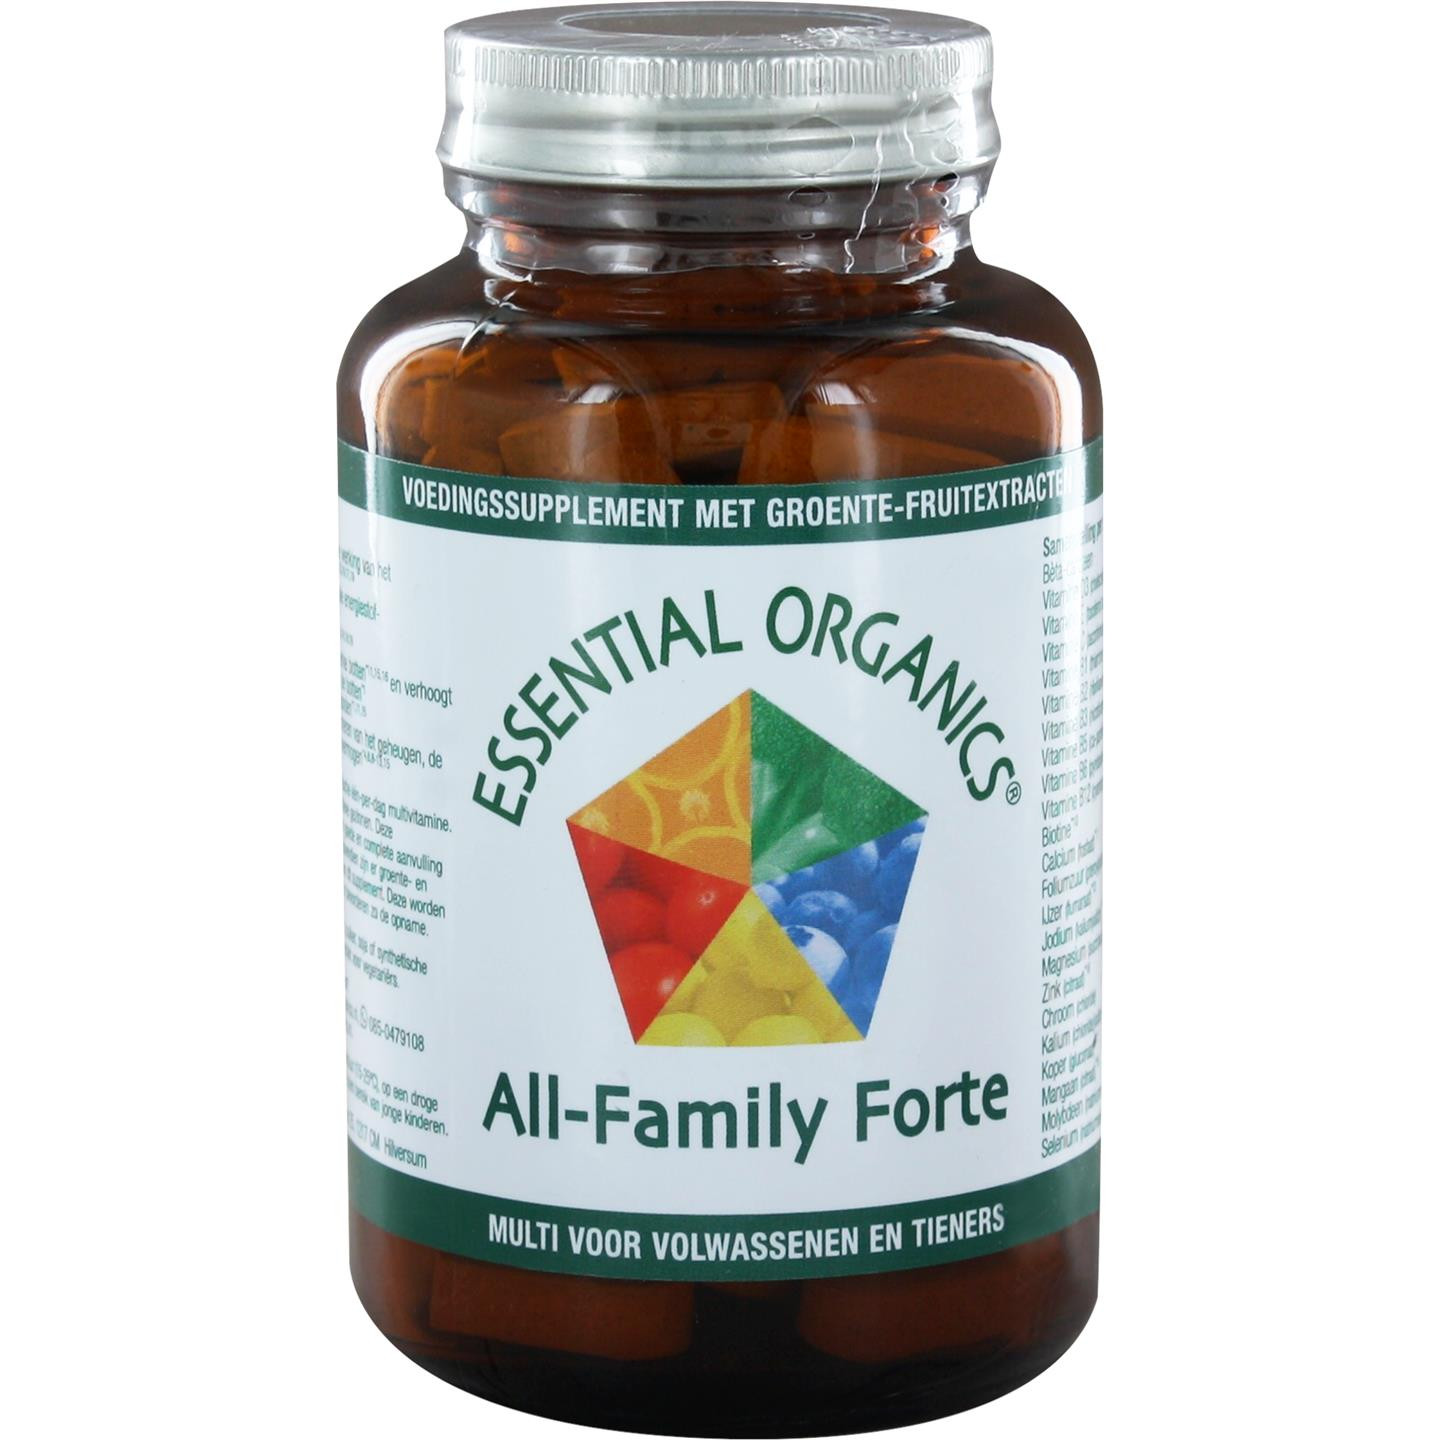 All-Family Forte